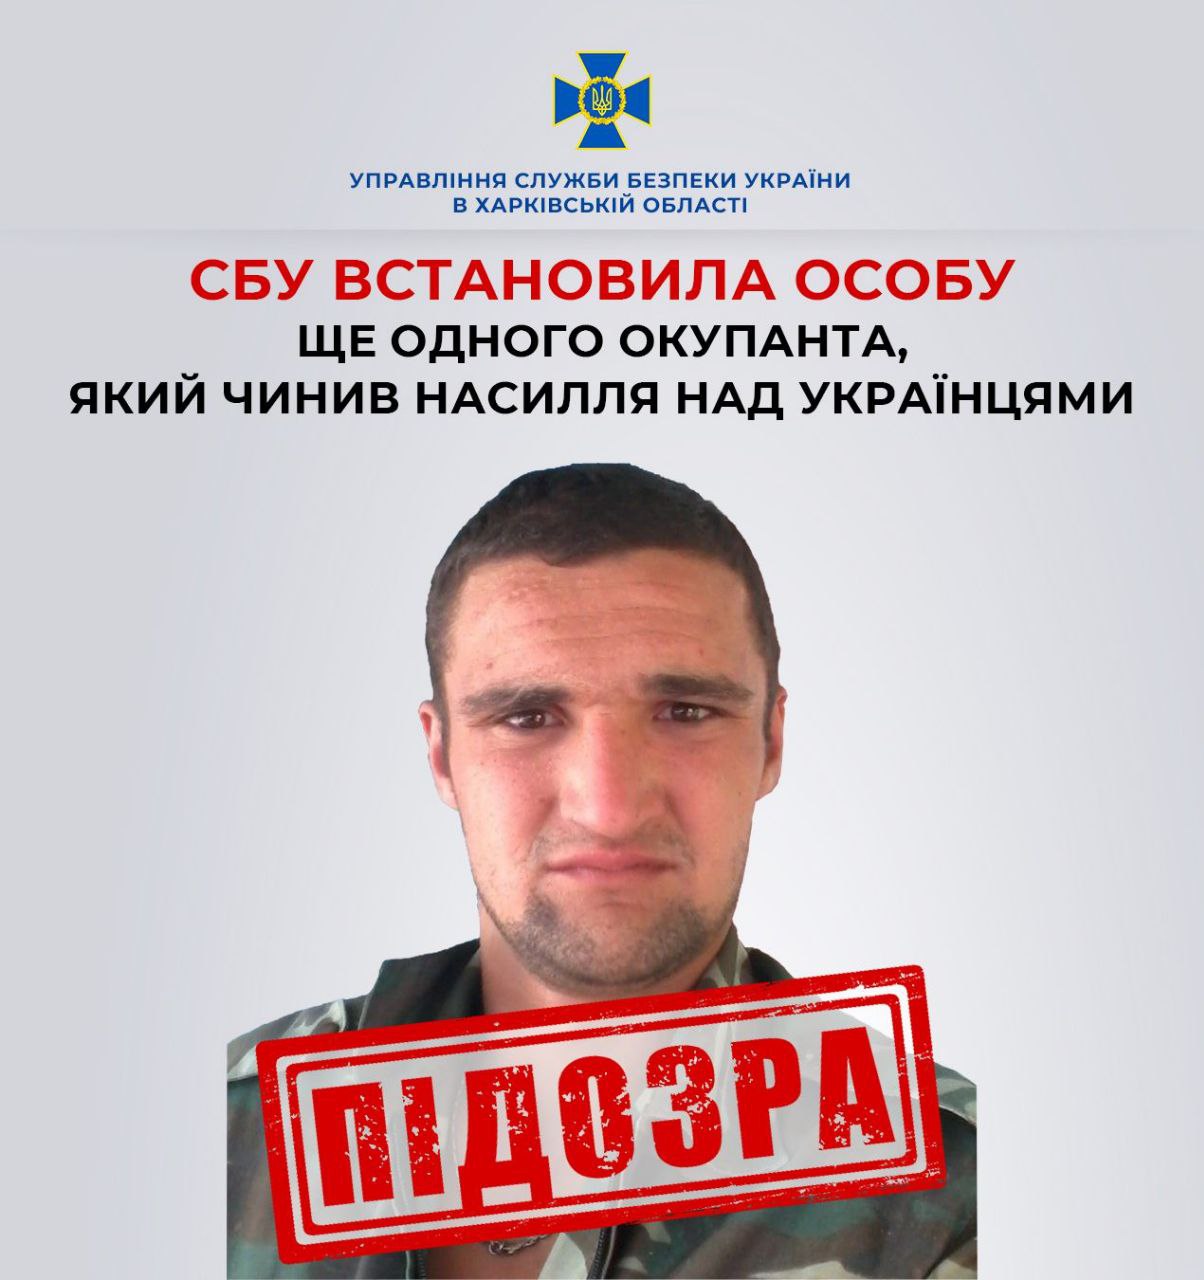 Тянул за волосы и изнасиловал: на Харьковщине установили личность оккупанта